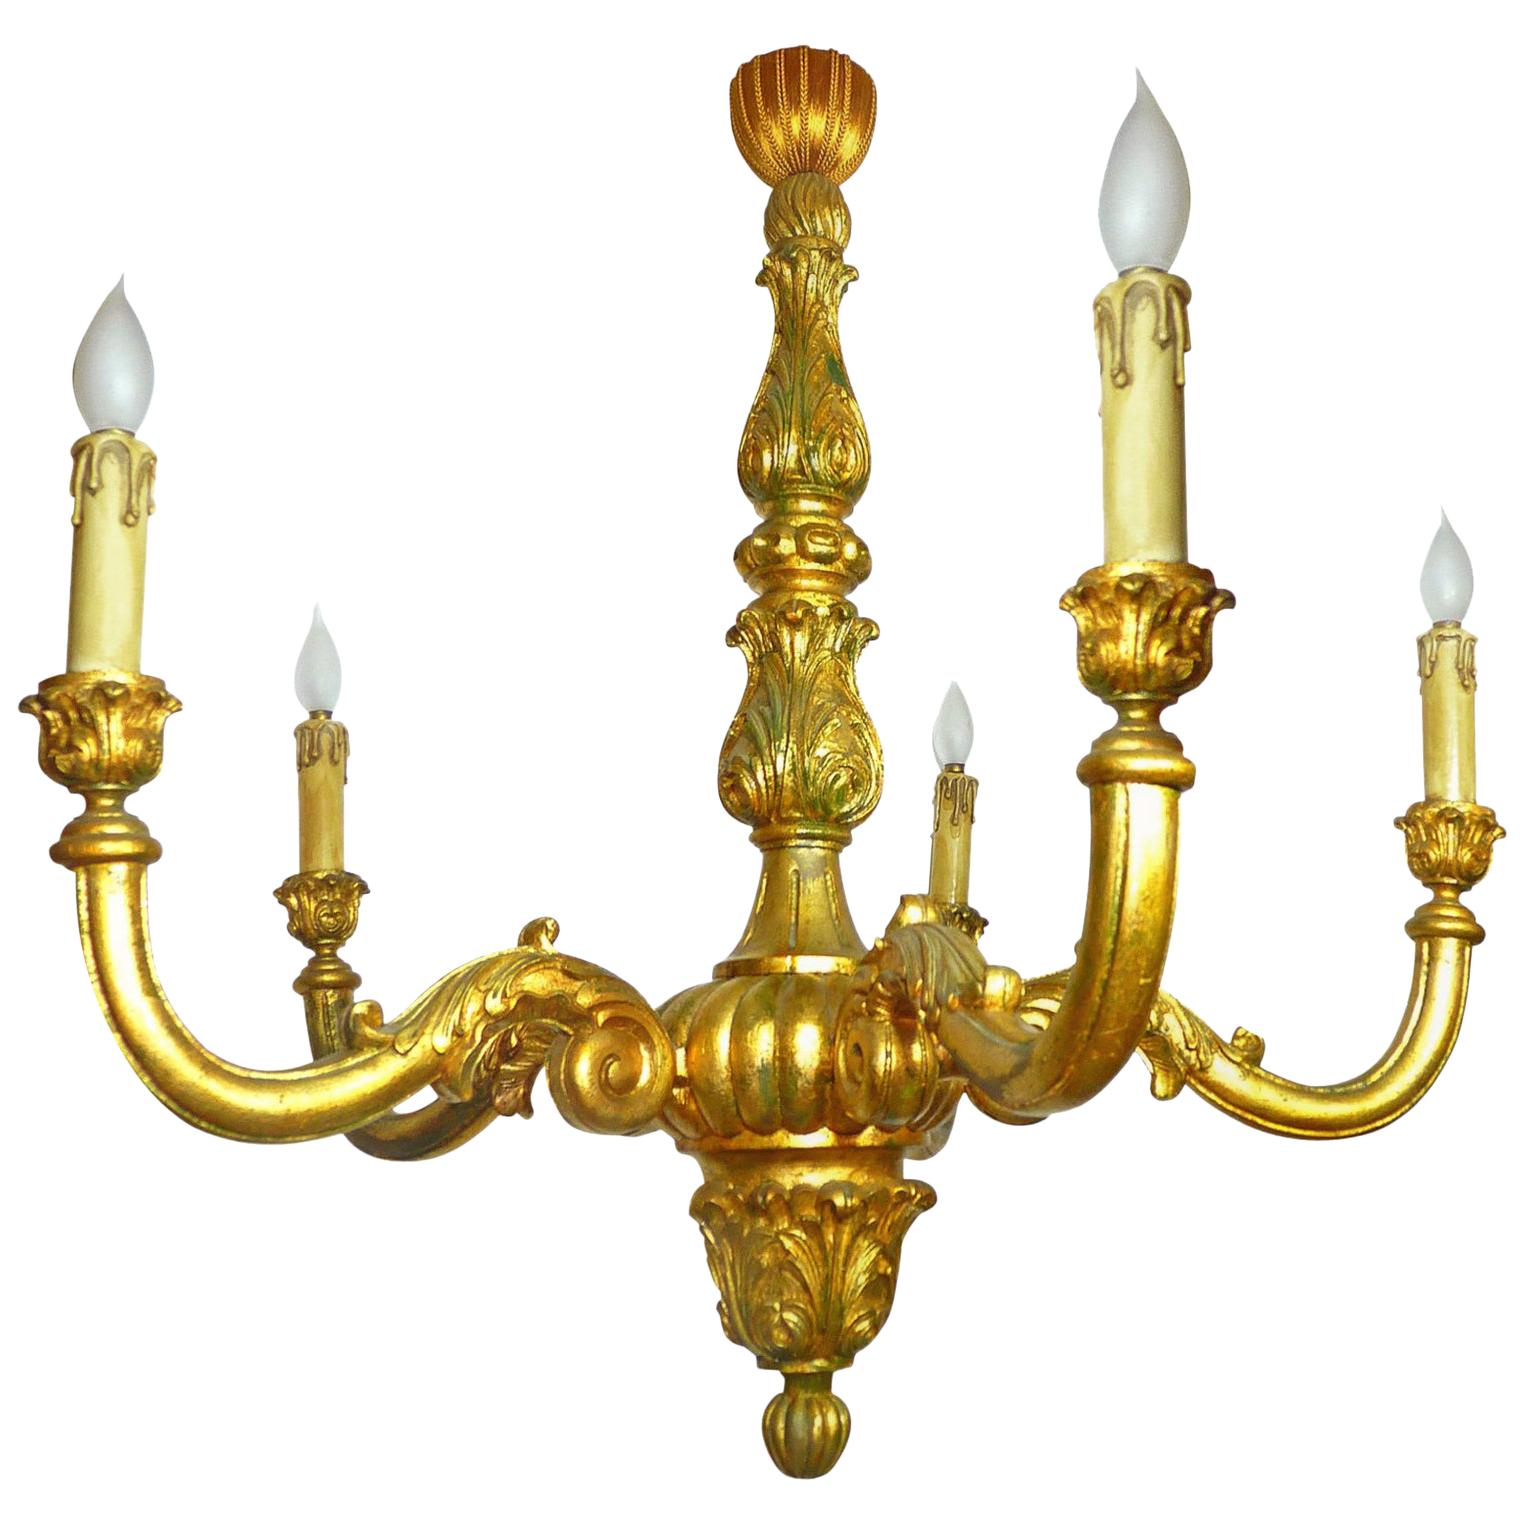 Grand lustre de style Régence française Louis XV en bois sculpté et doré à feuilles d'or, style baroque